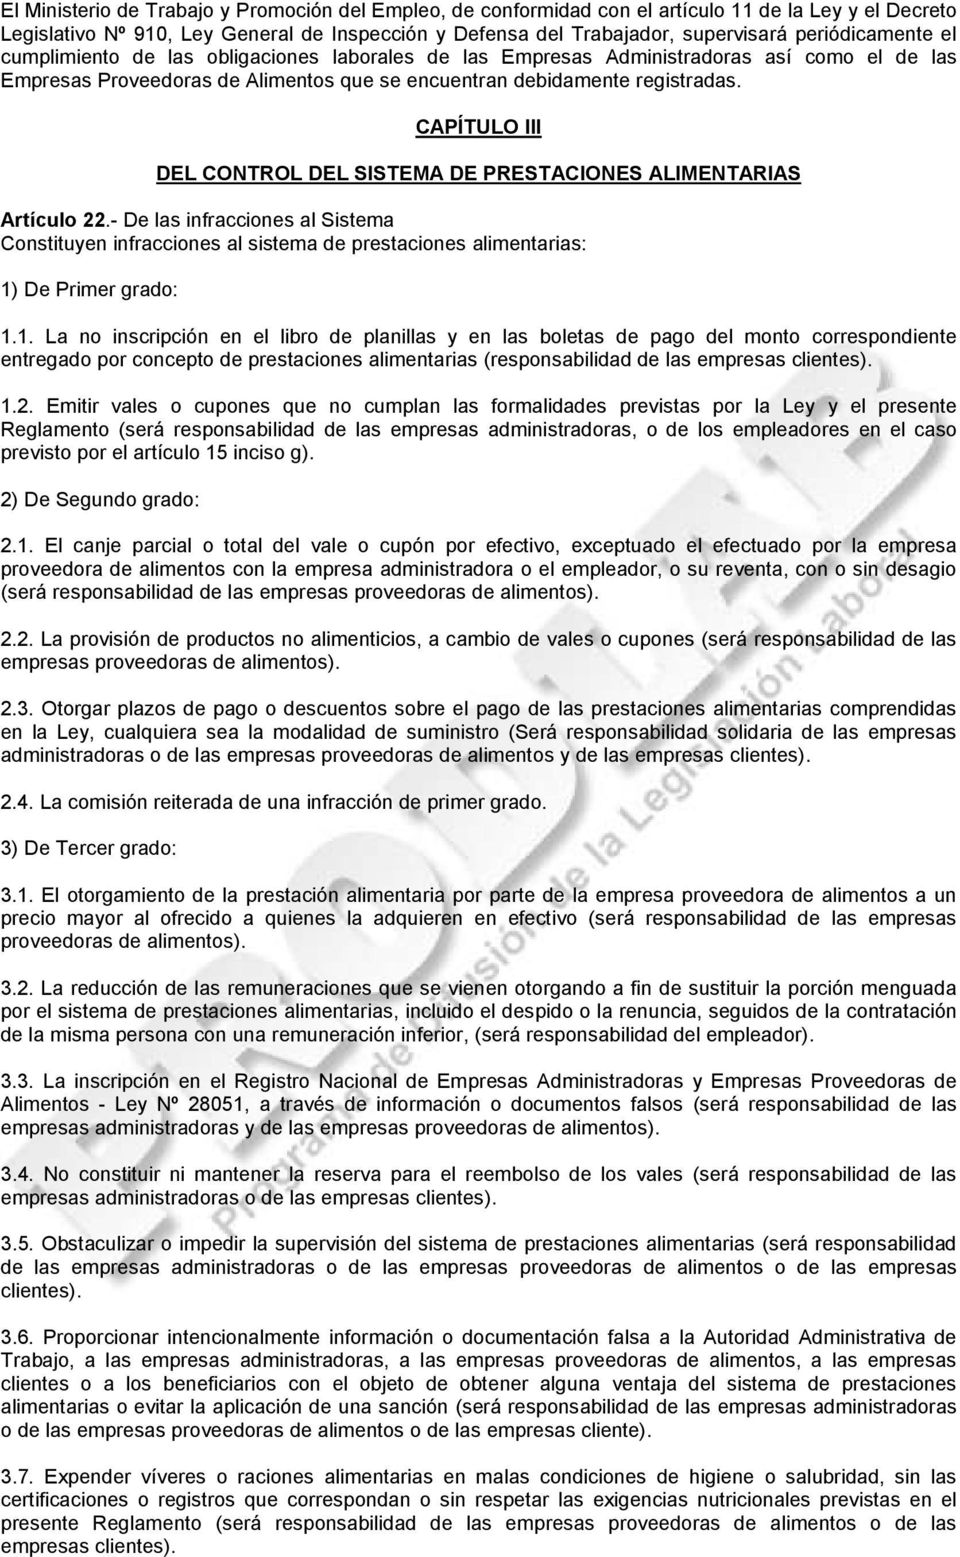 CAPÍTULO III DEL CONTROL DEL SISTEMA DE PRESTACIONES ALIMENTARIAS Artículo 22.- De las infracciones al Sistema Constituyen infracciones al sistema de prestaciones alimentarias: 1) De Primer grado: 1.